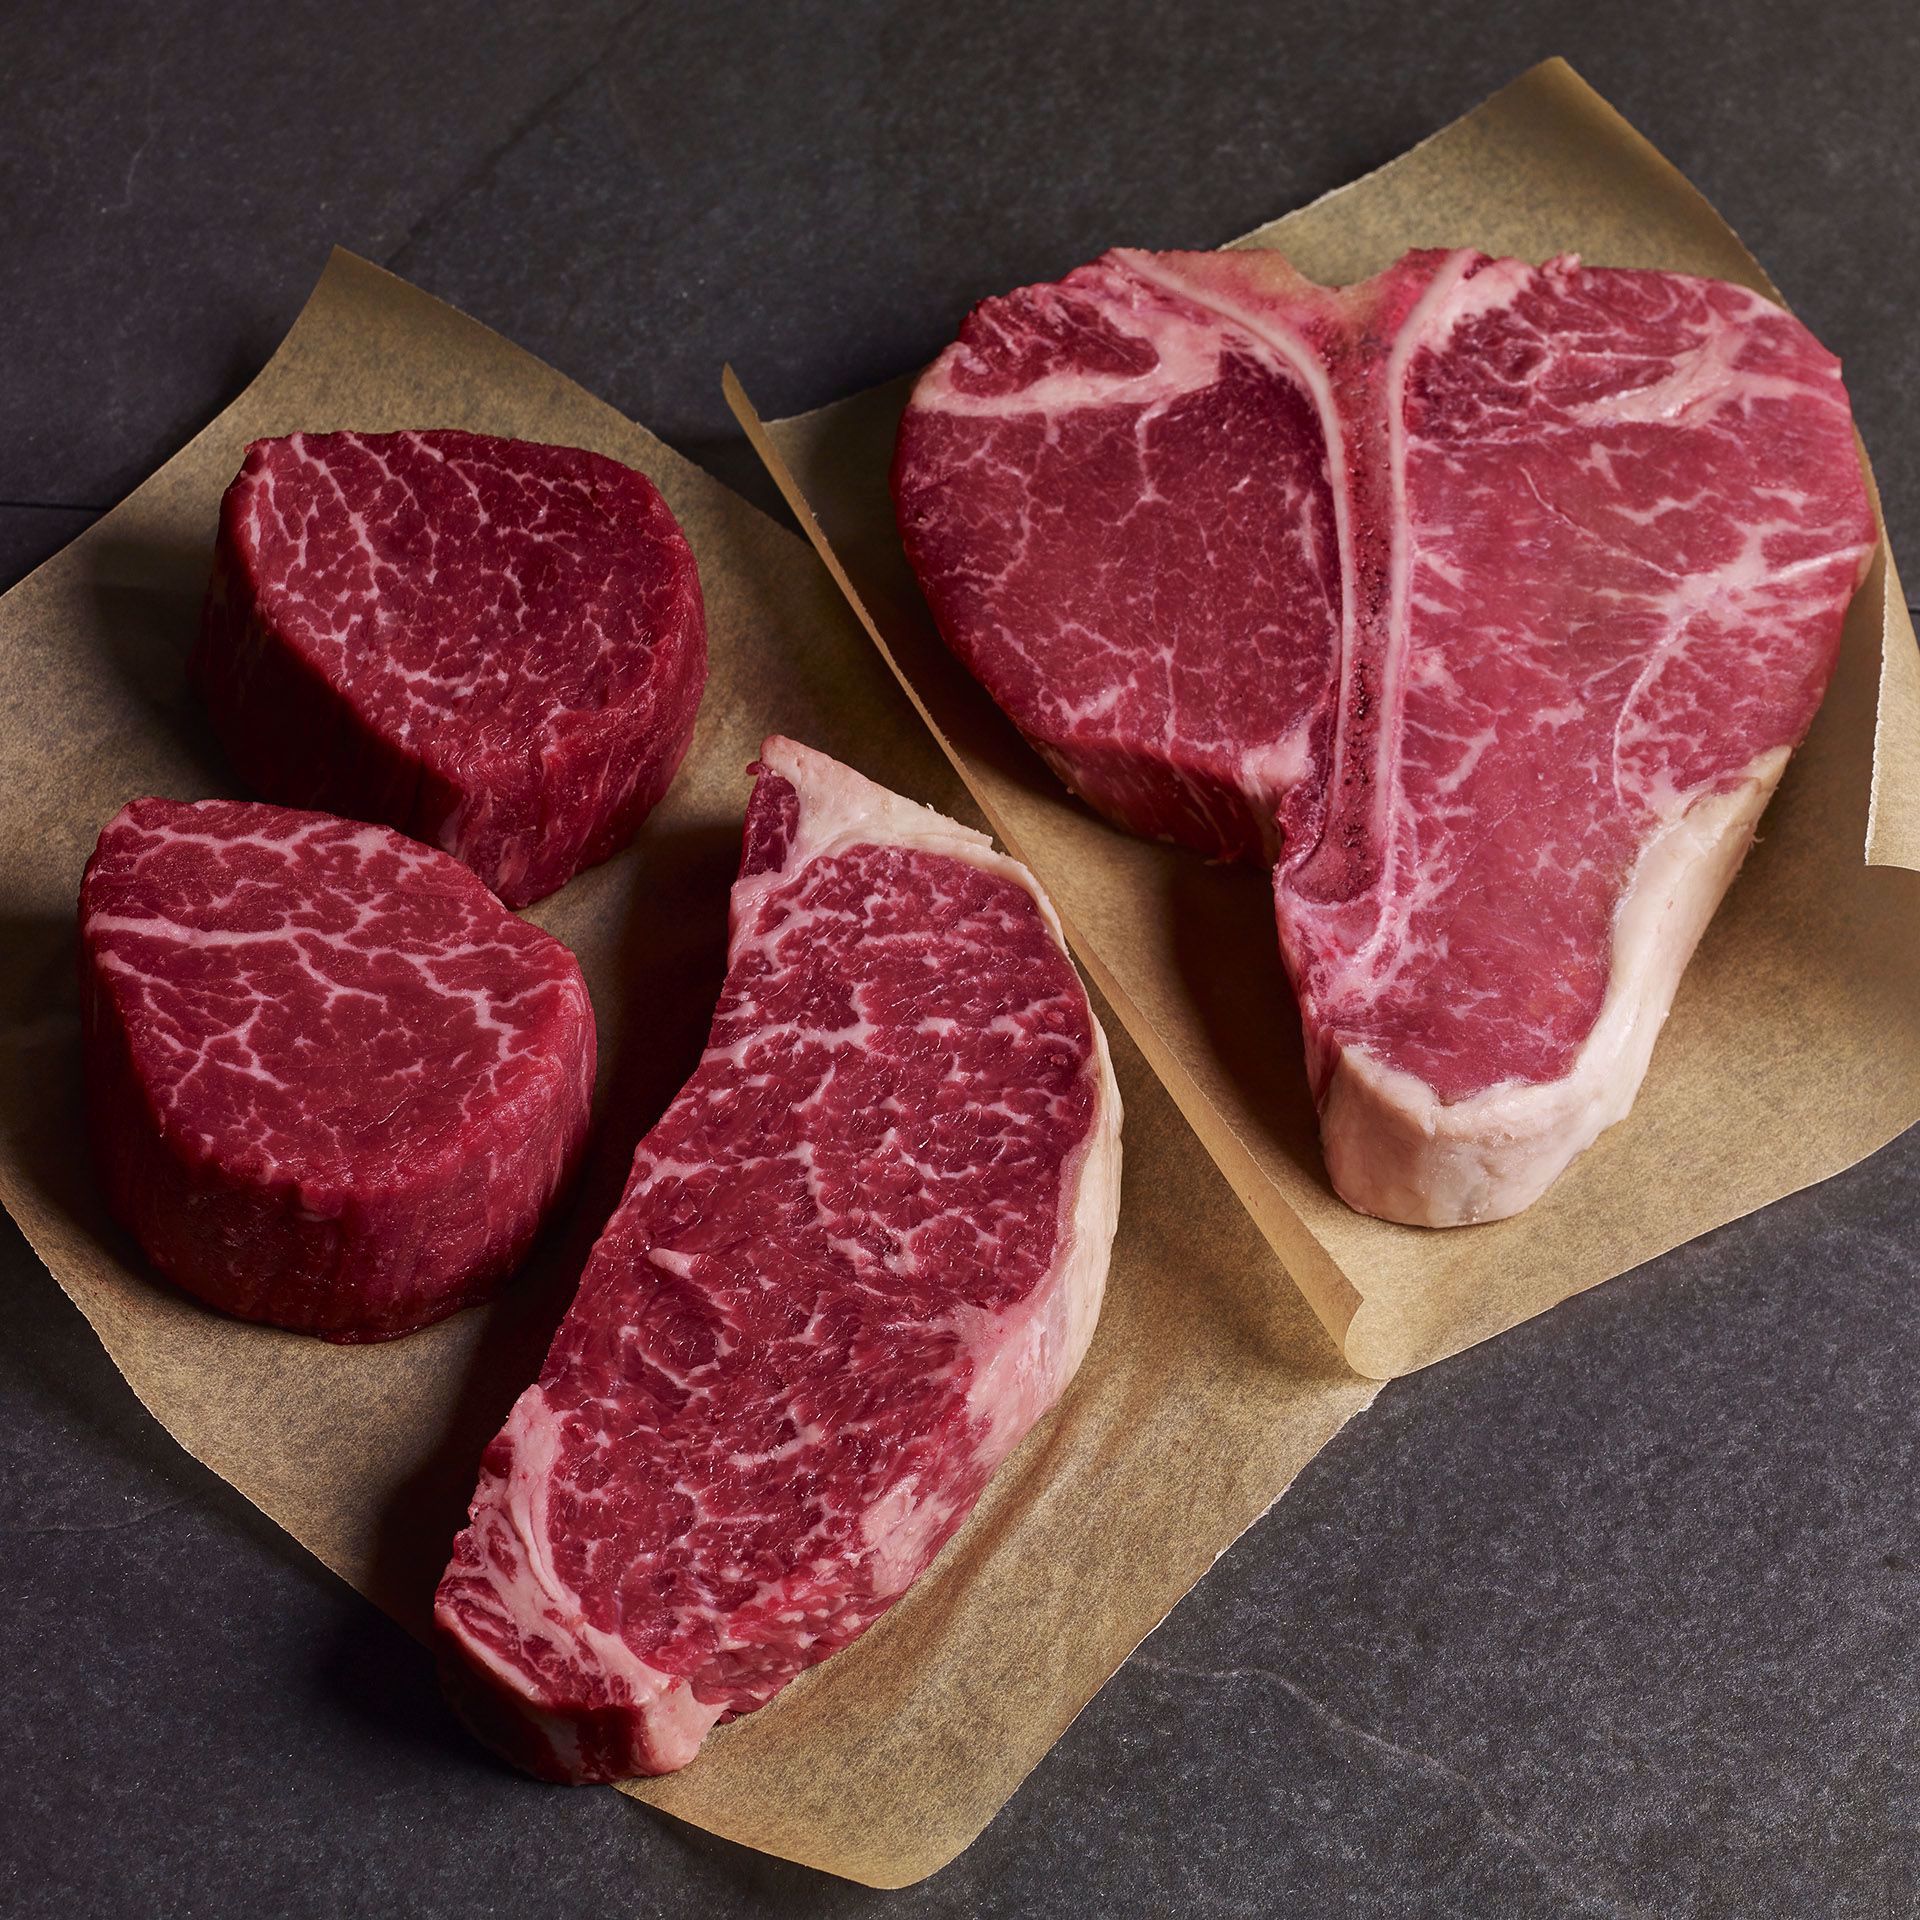 Picture of Starstruck: 2 (6 oz.) USDA Prime Filet Mignon, 2  (8 oz.) USDA Prime Dry-Aged Boneless Strip Steaks, 1 (22 oz.) USDA Prime Dry-Aged Porterhouse Steak